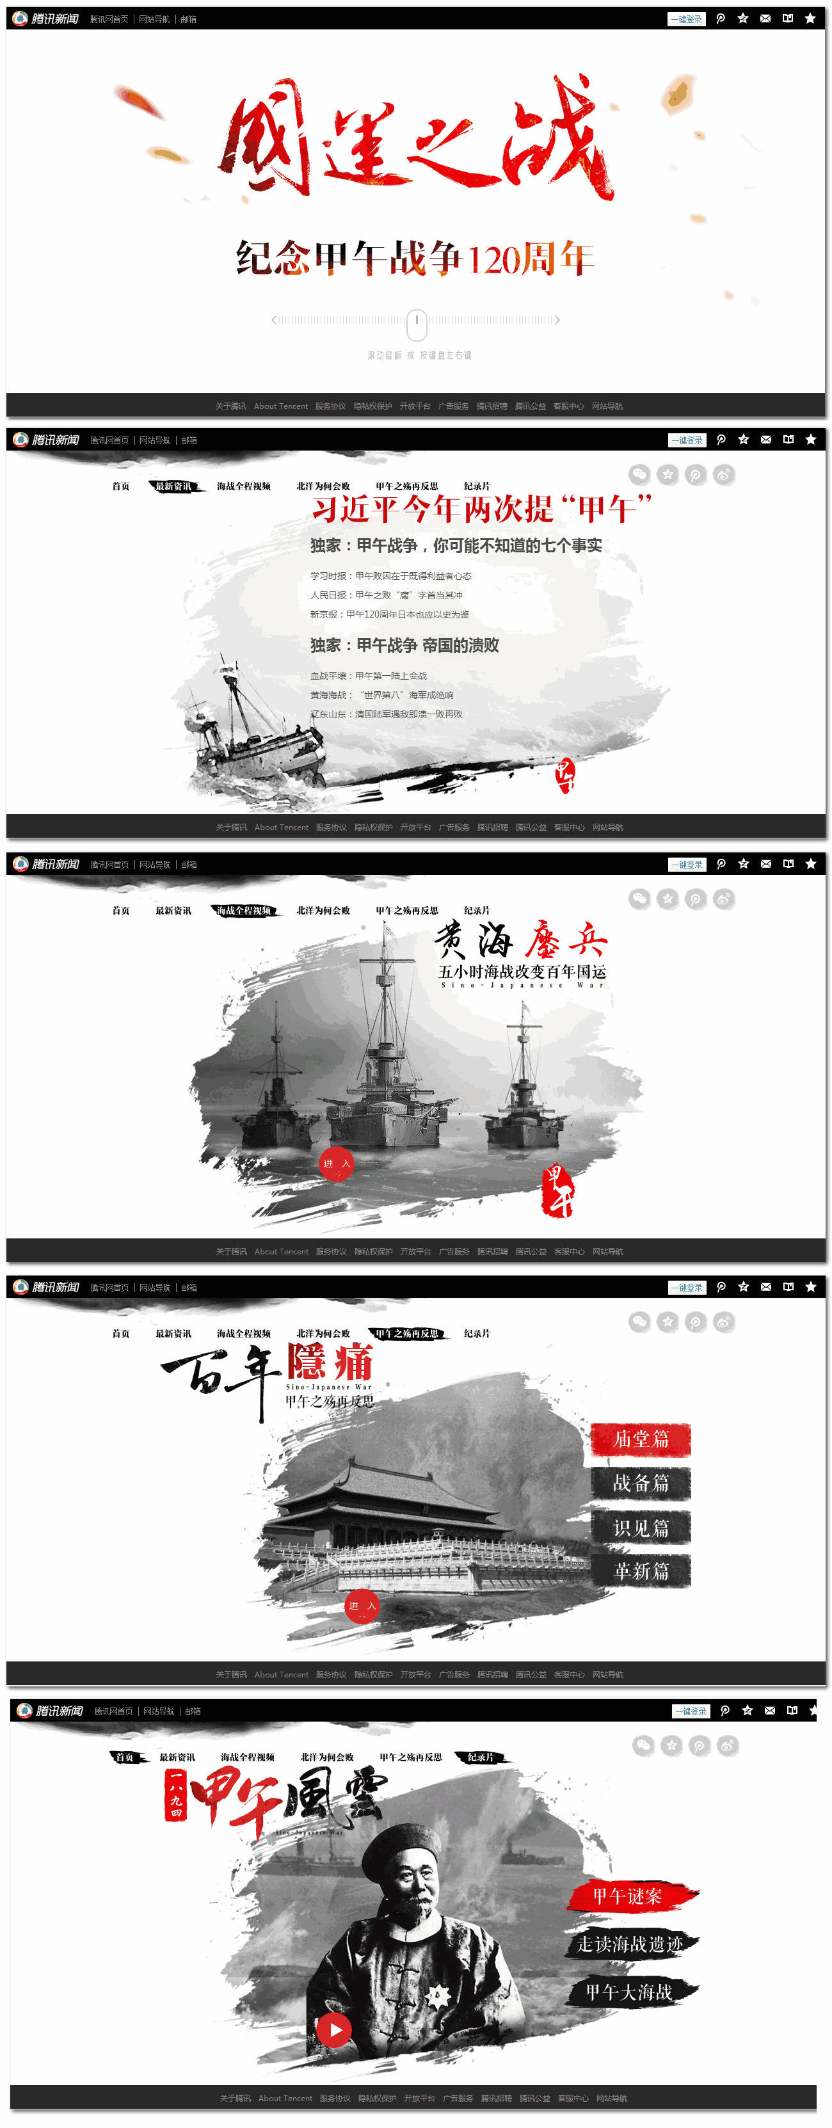 腾讯甲午战争专题页面滚动展示网站制作_网站建设模板演示图